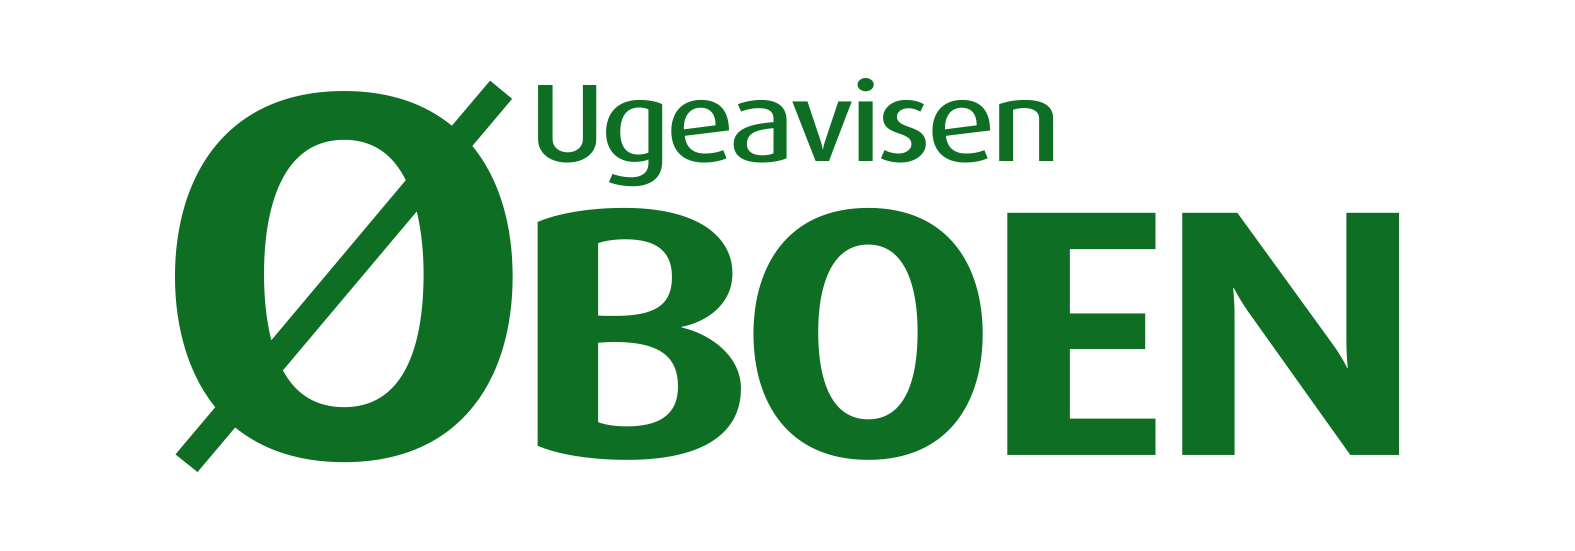 Ugeavisen Øboen logo